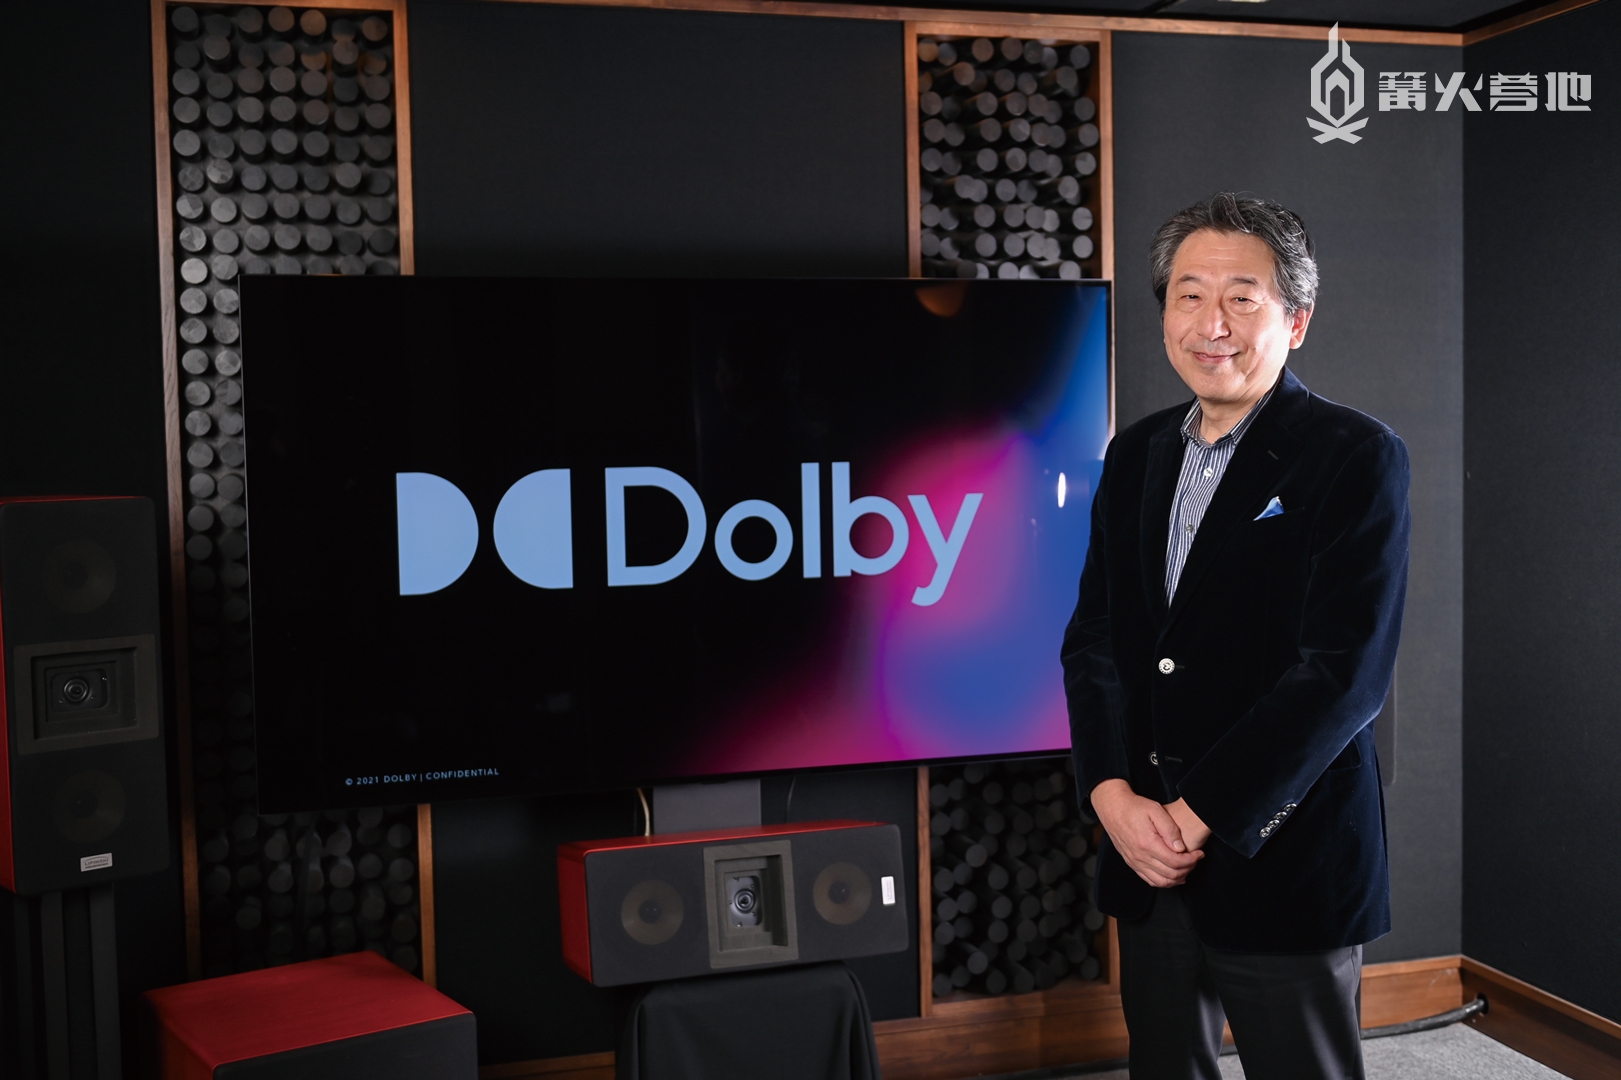 大泽幸弘（文中简称为大泽），Dolby Japan 董事长